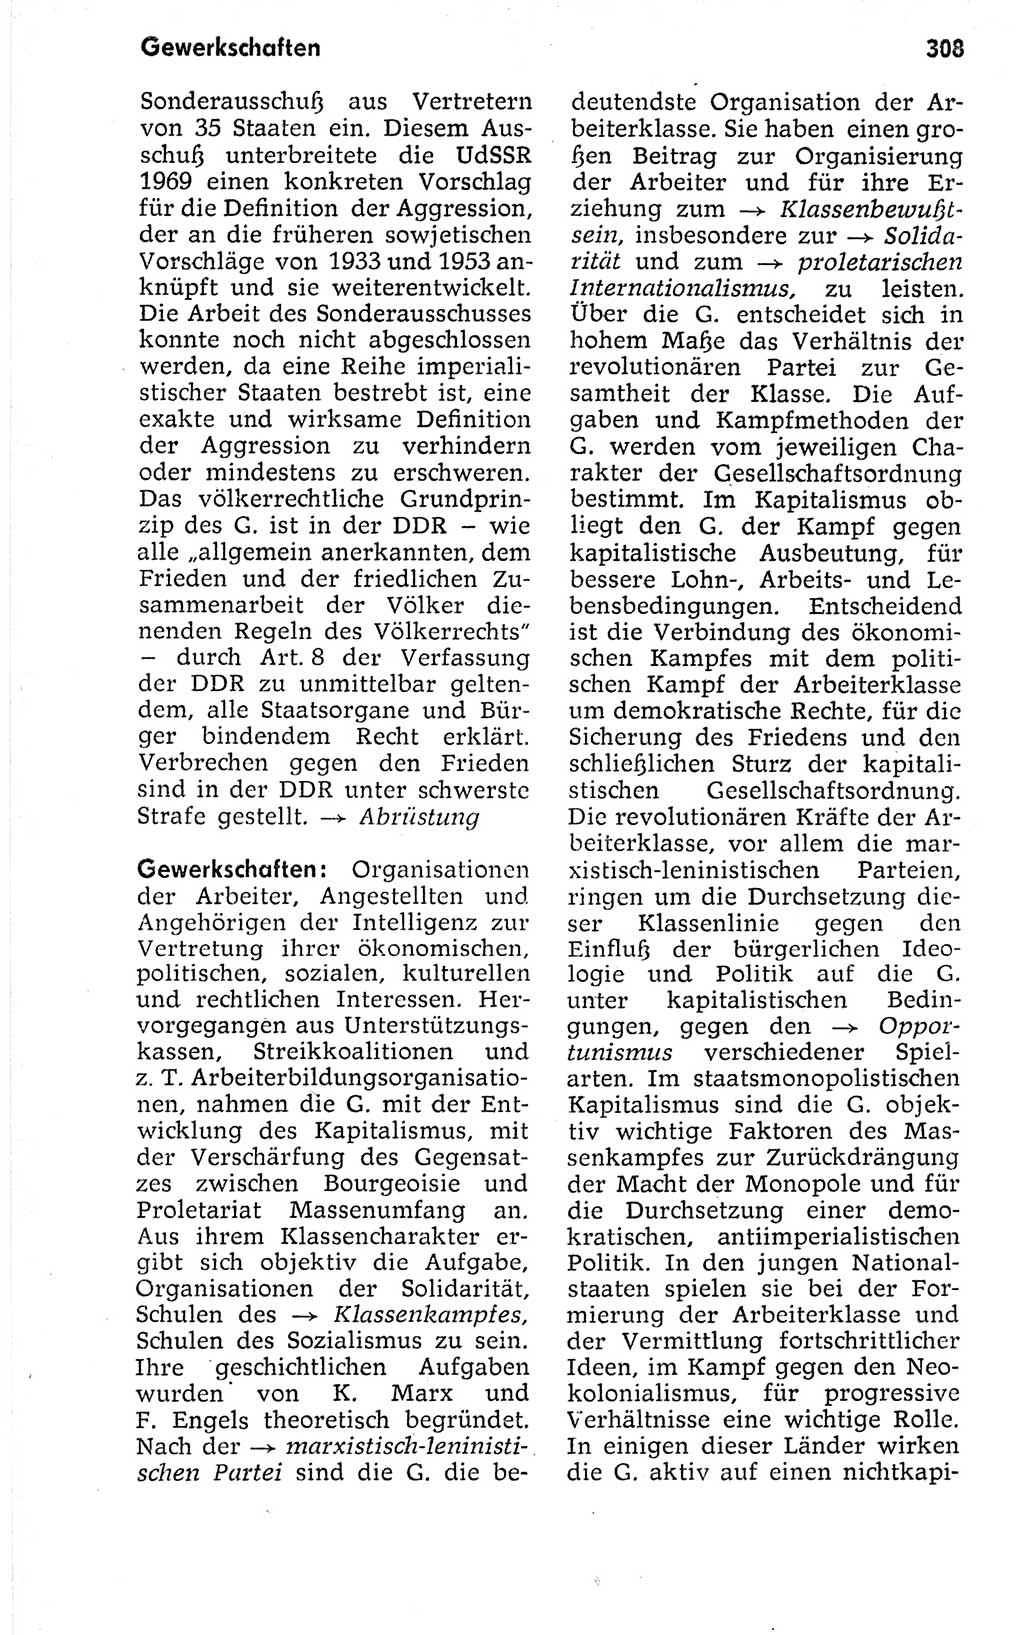 Kleines politisches Wörterbuch [Deutsche Demokratische Republik (DDR)] 1973, Seite 308 (Kl. pol. Wb. DDR 1973, S. 308)